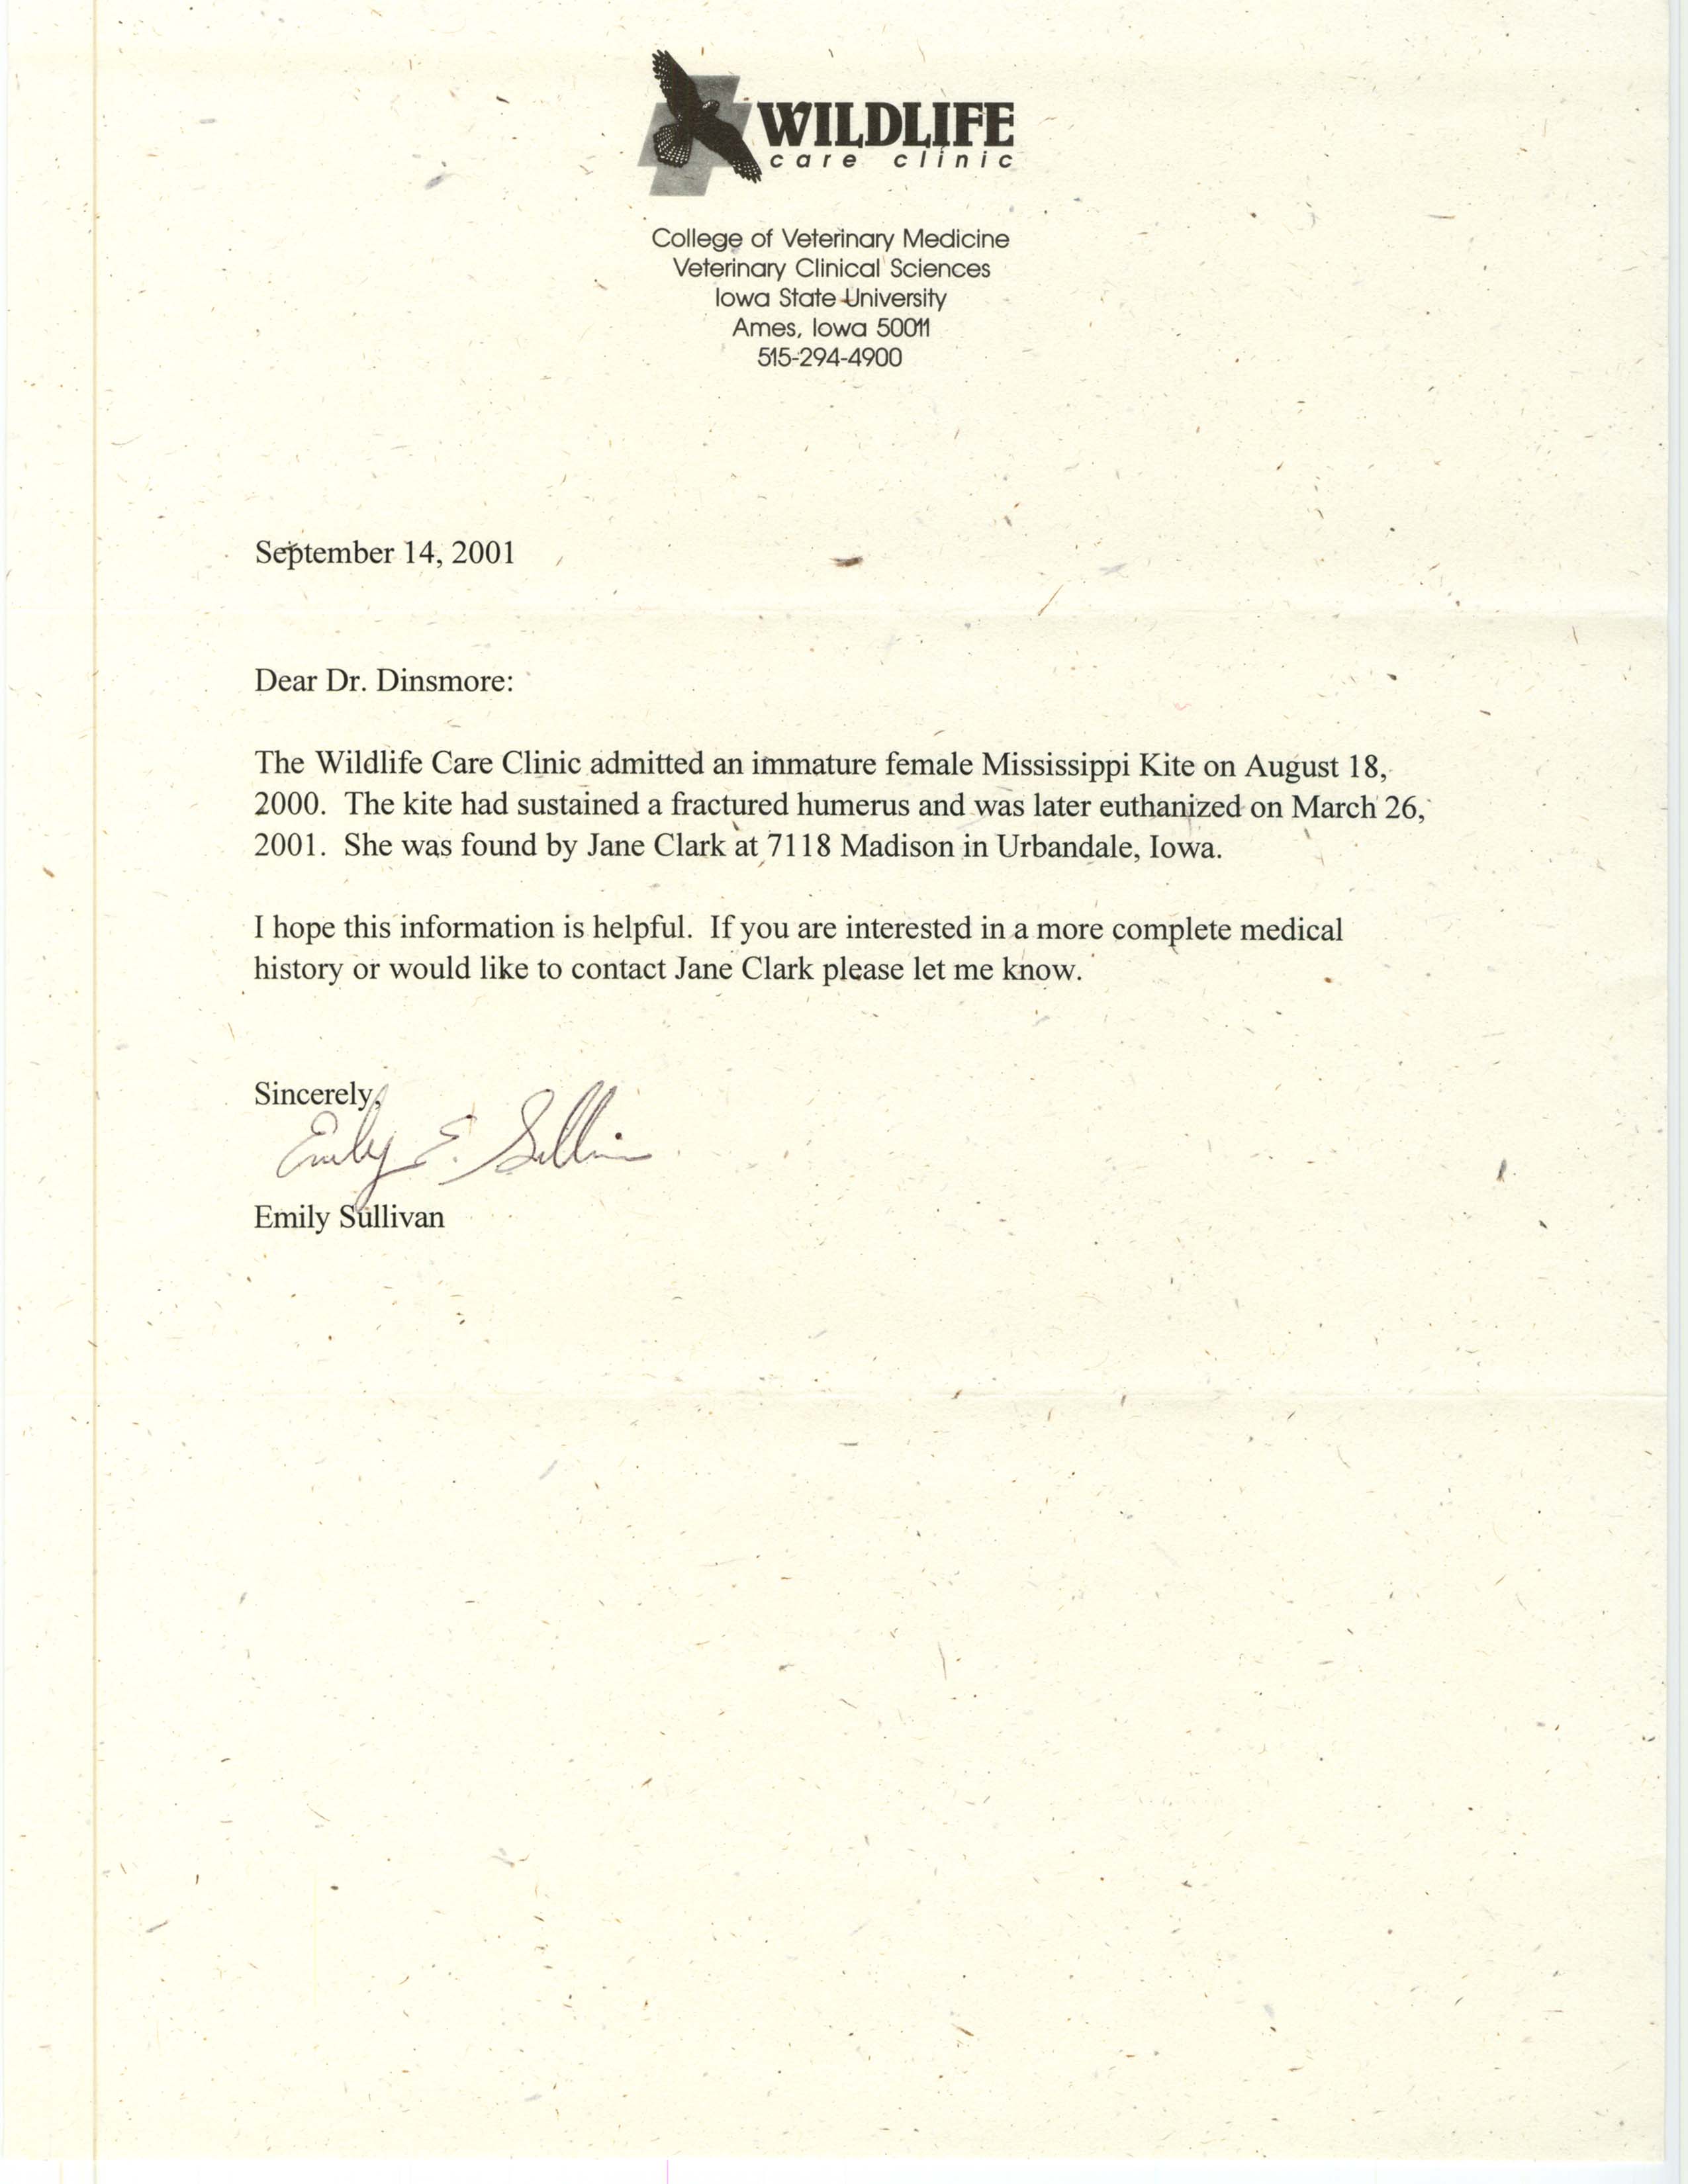 Emily Sullivan letter to James J. Dinsmore regarding an injured immature Mississippi Kite, September 14, 2001